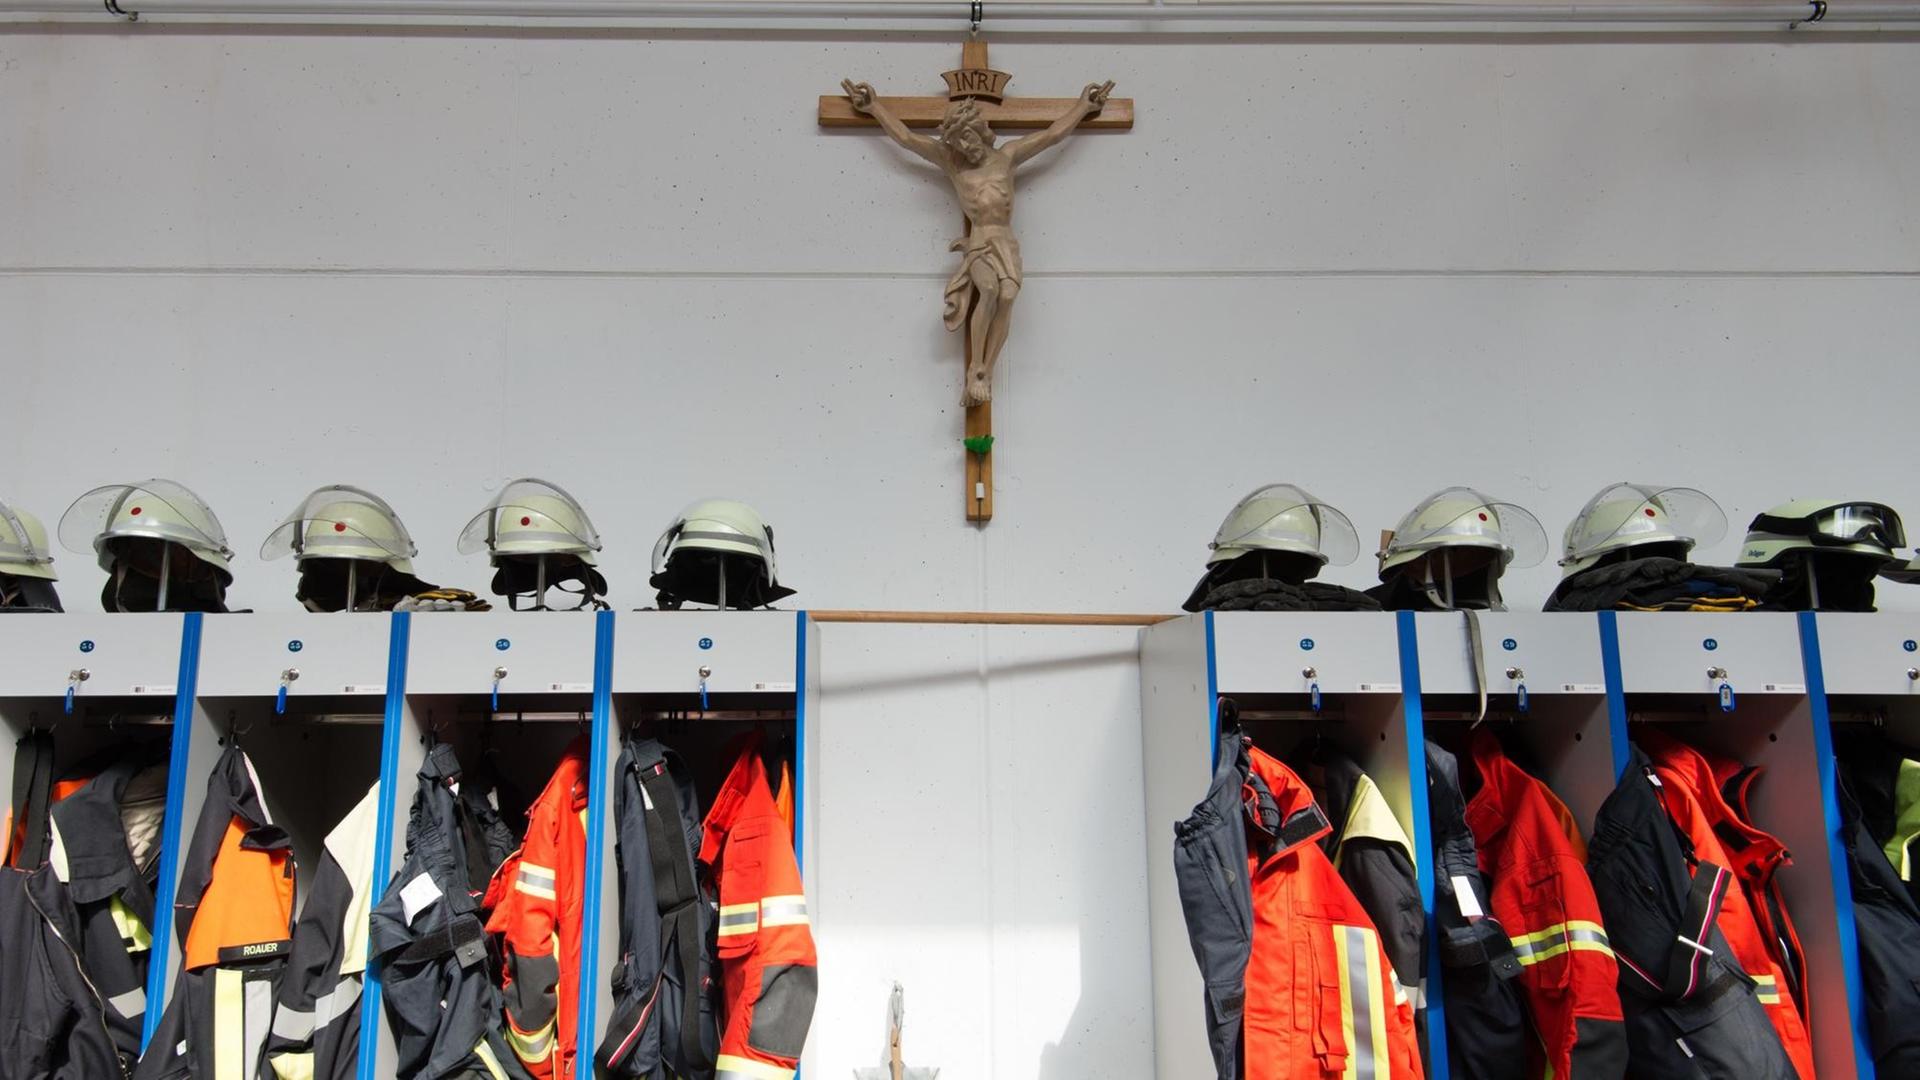 Ein Kruzifix hängt bei der Freiwilligen Feuerwehr in Allersberg (Bayern) über der Garderobe in der Fahrzeughalle.